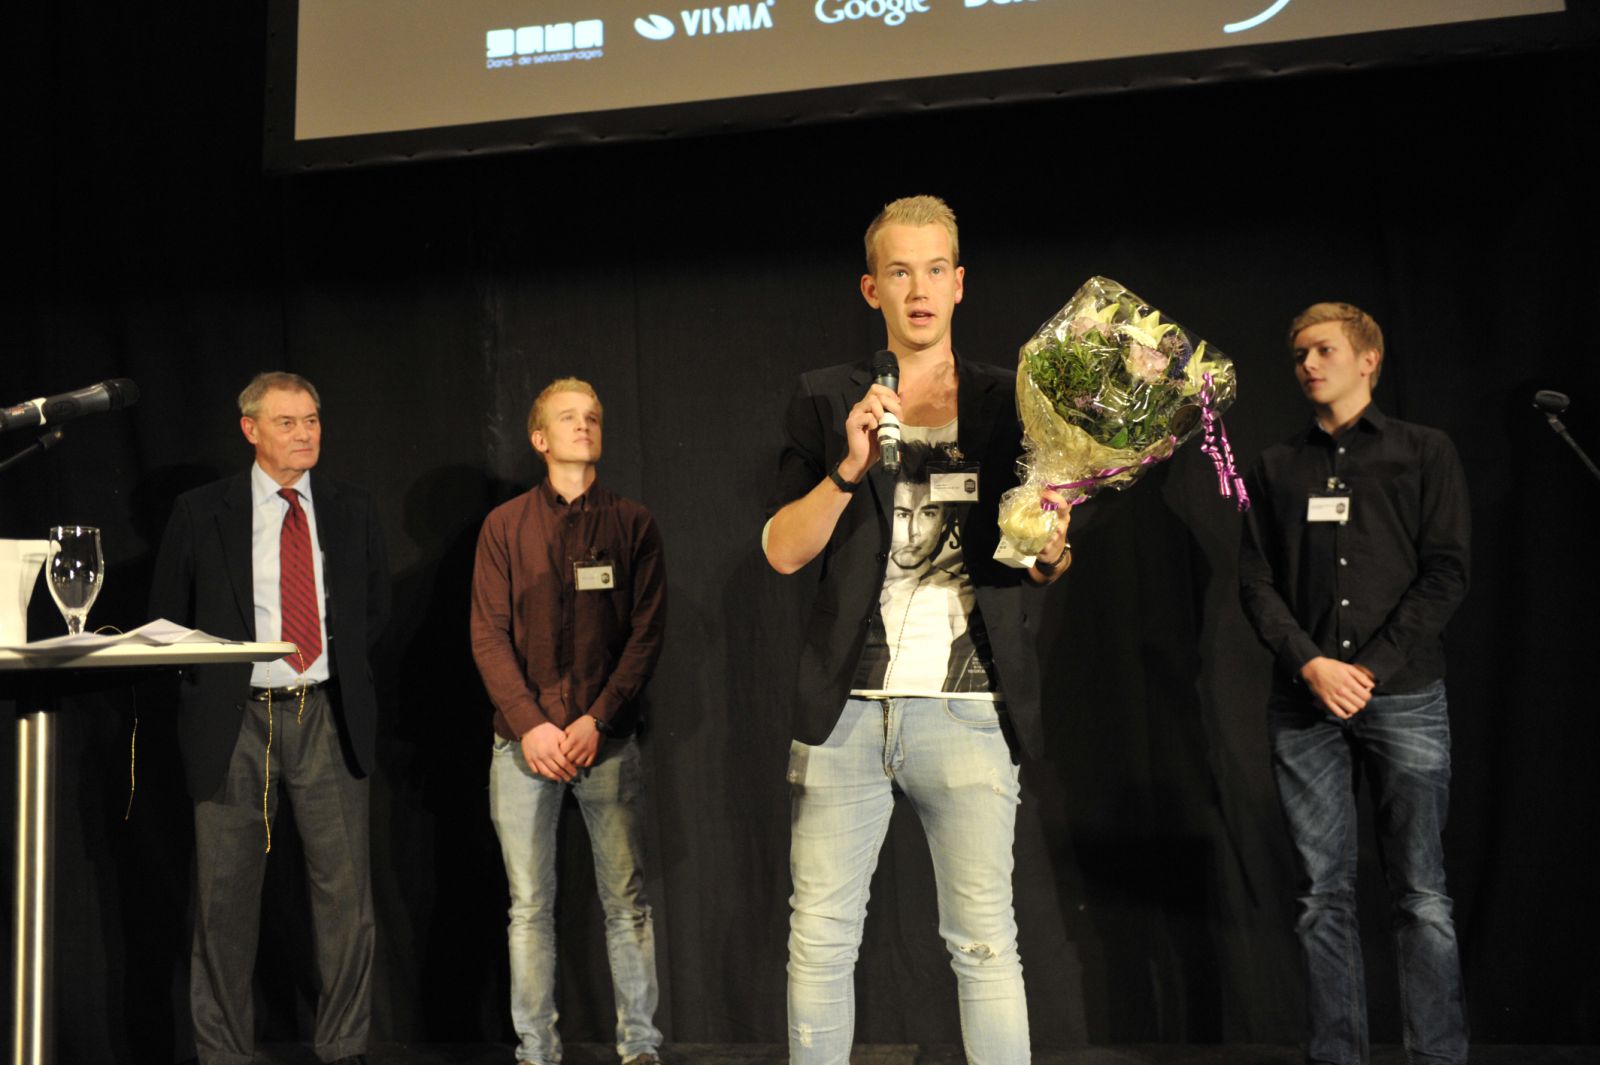 Casper Blom IVÆKSTprisen 2012 Årets Unge Håb scene Asger Aamund QReation